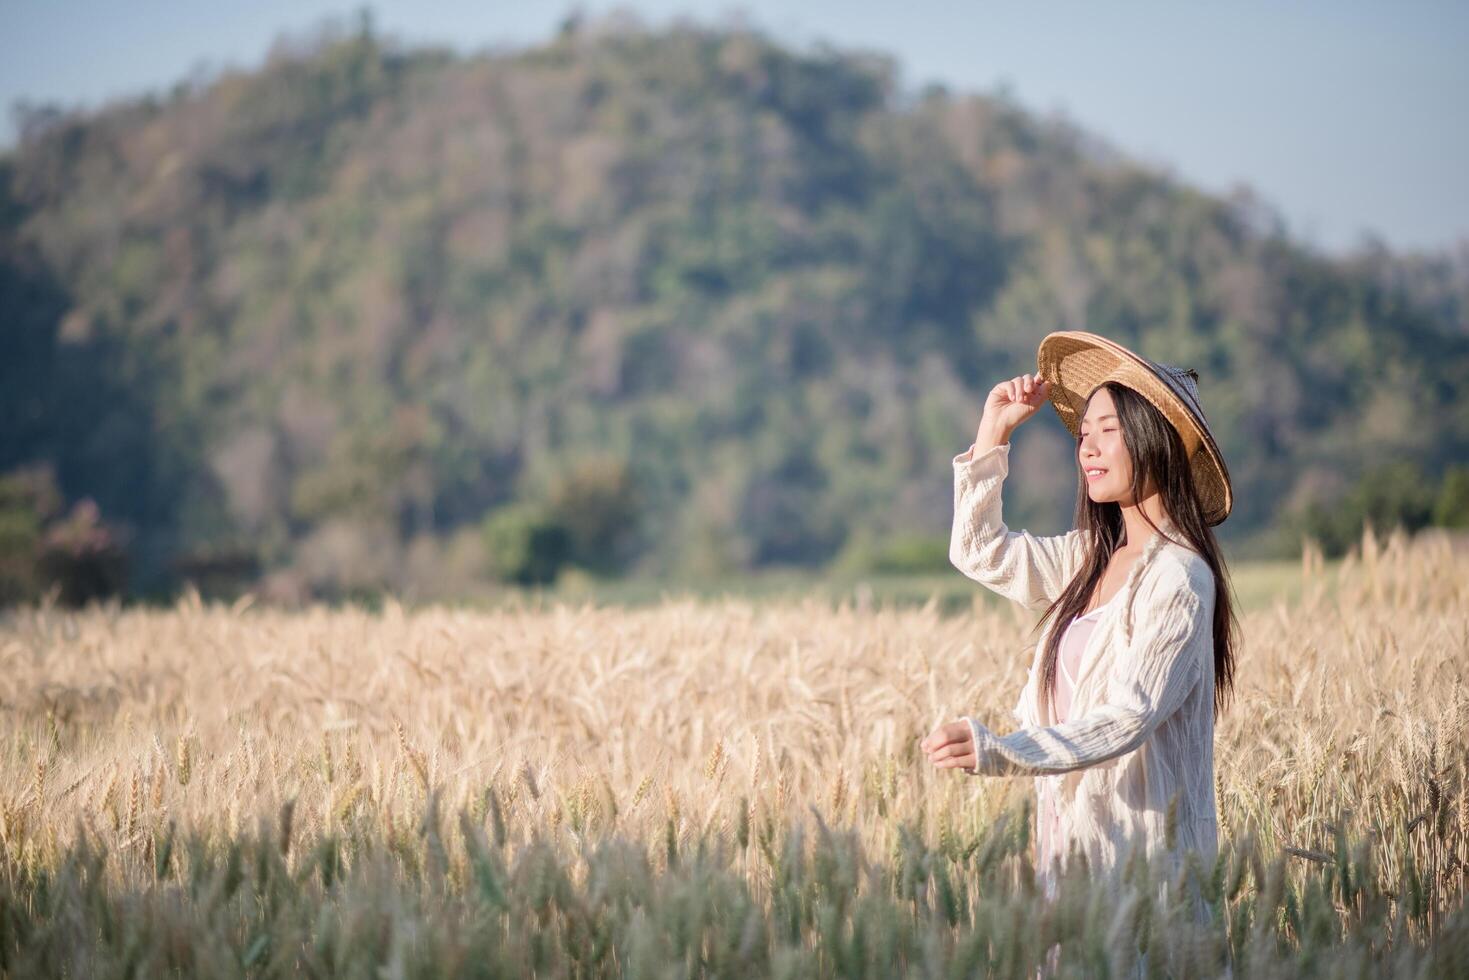 Vietnamese female farmer in wheat harvest field photo